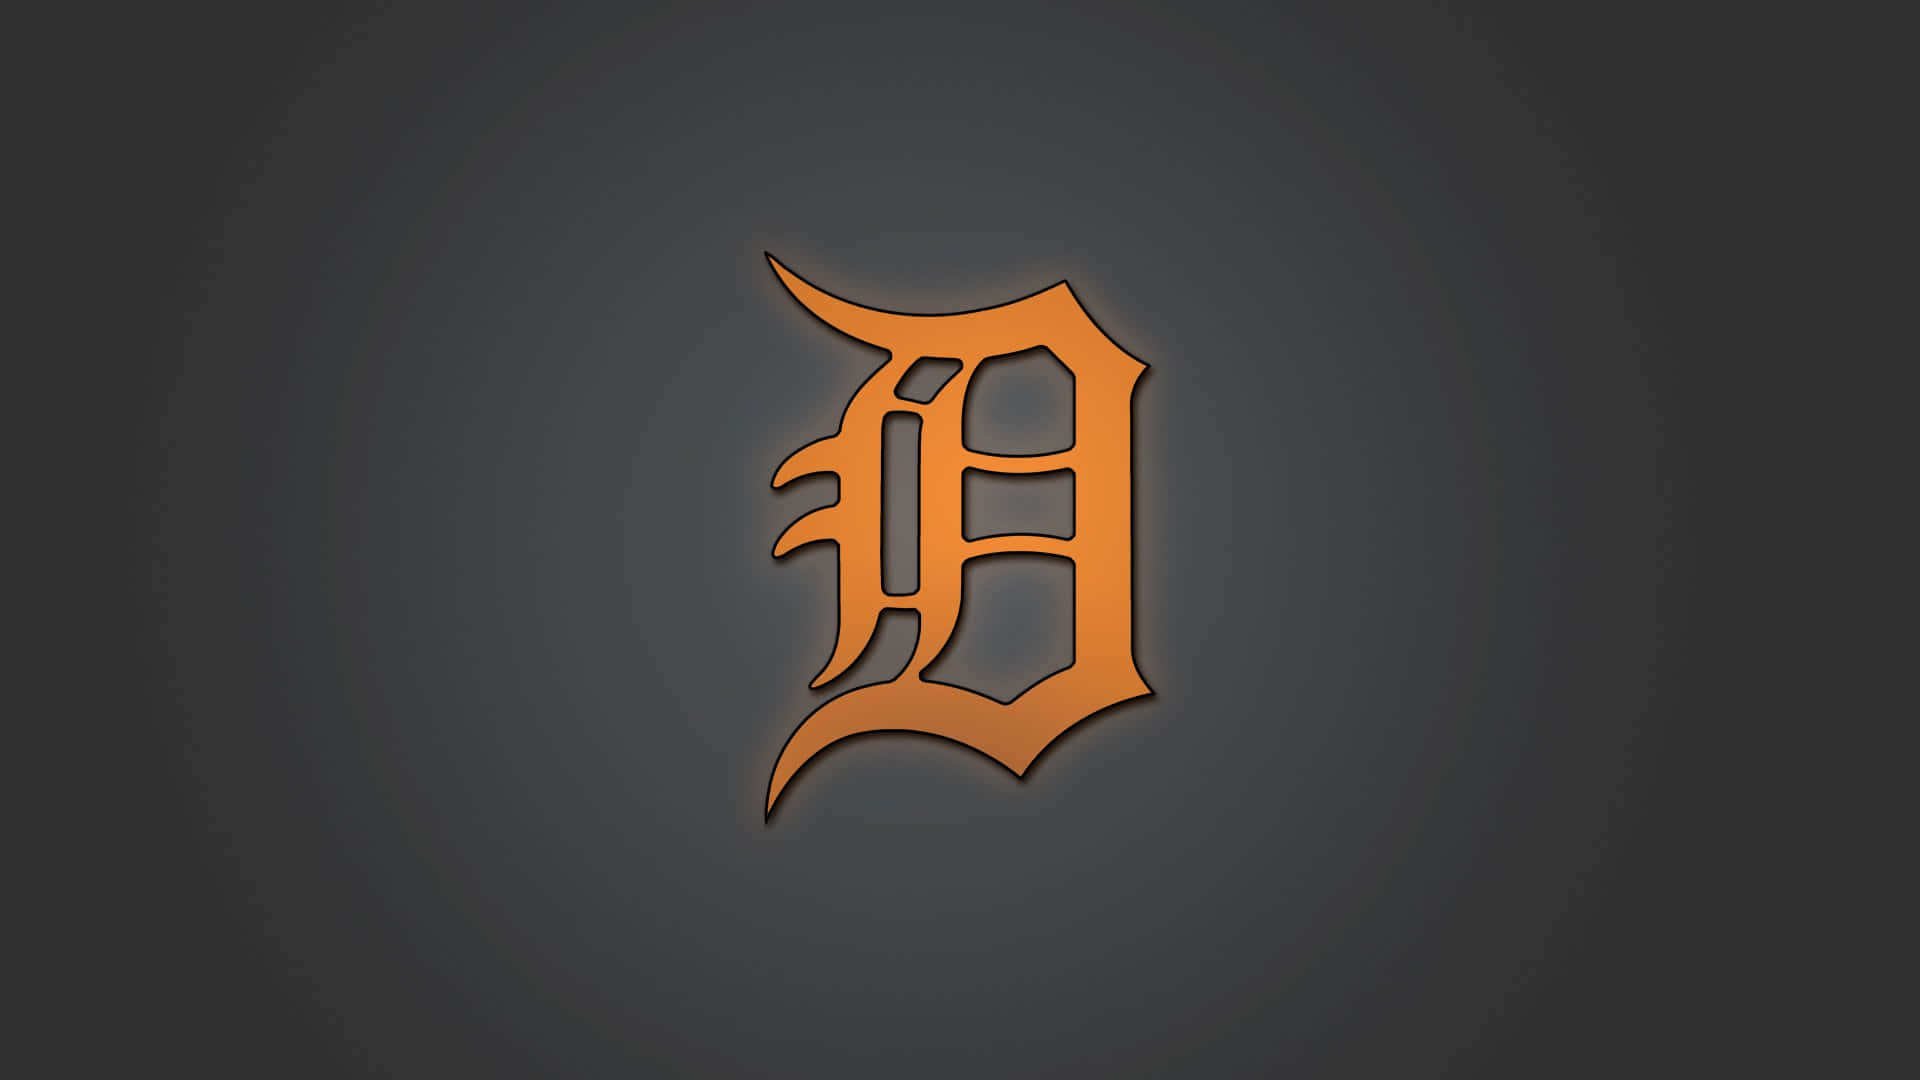 Detroittigers-logotypen I Orange Gotisk Stil. Wallpaper